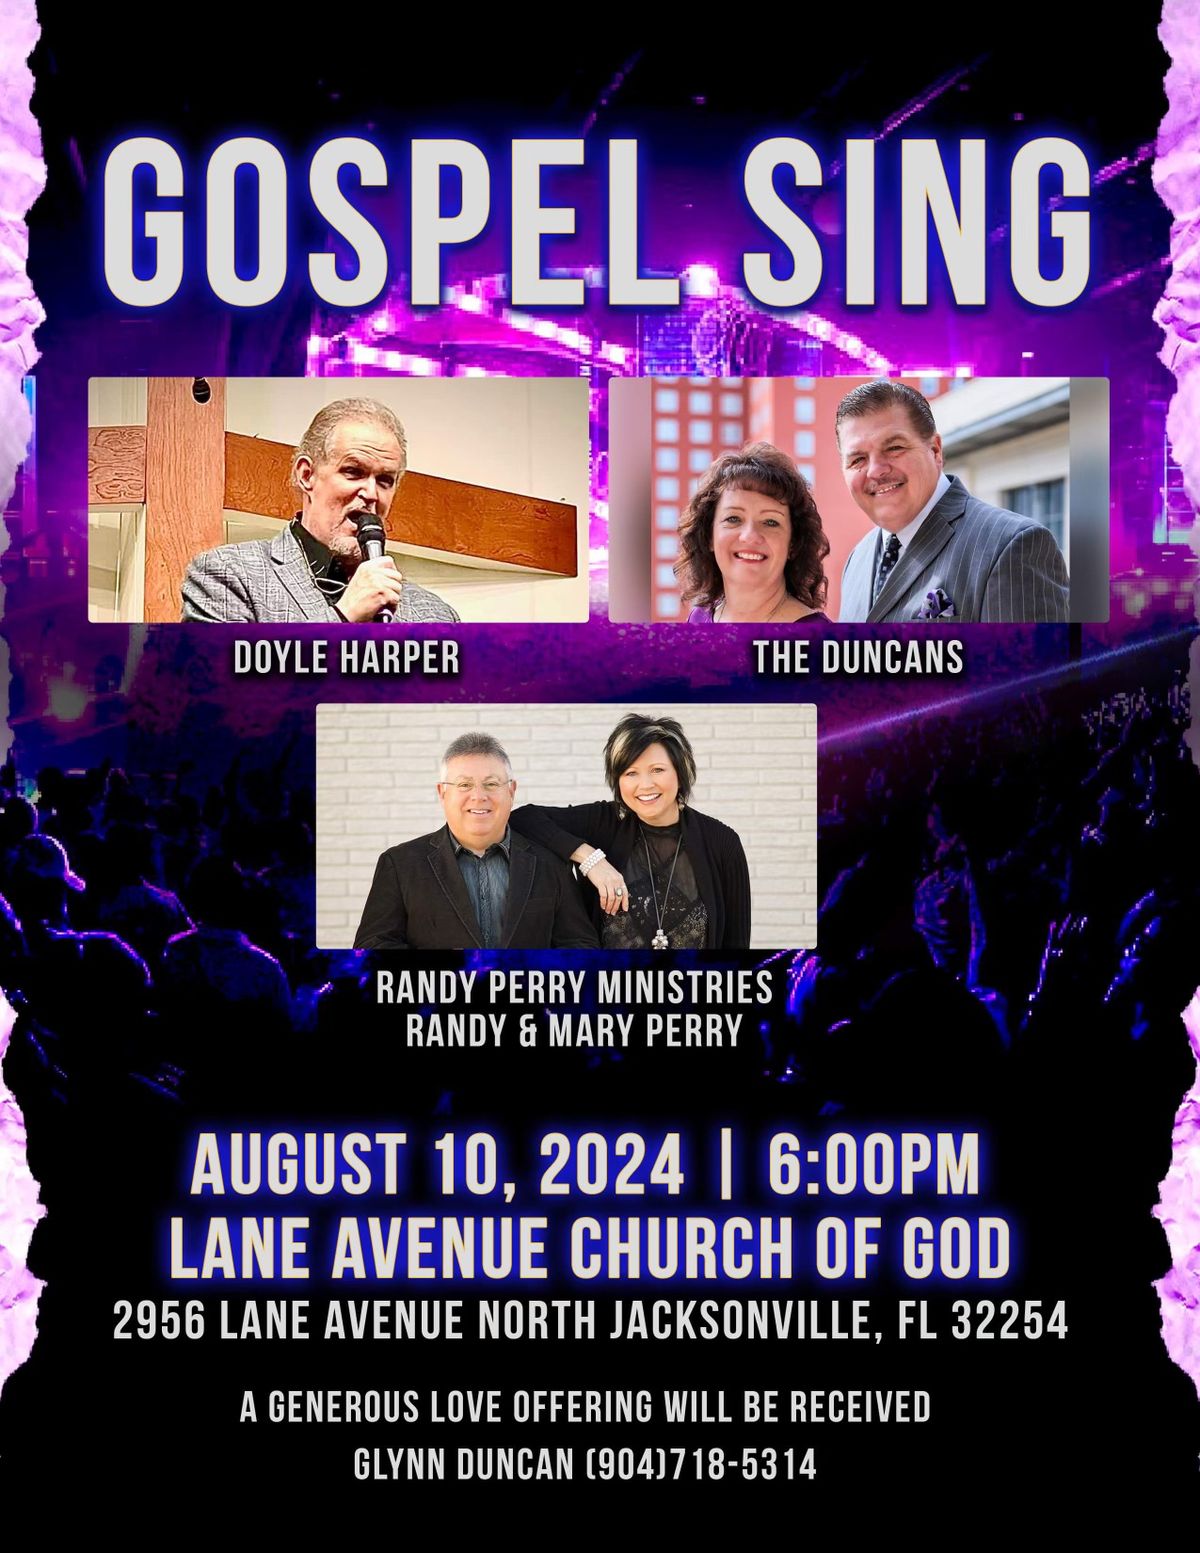 GOSPEL SING AT LANE AVENUE CHURCH OF GOD, JACKSONVILLE, FL